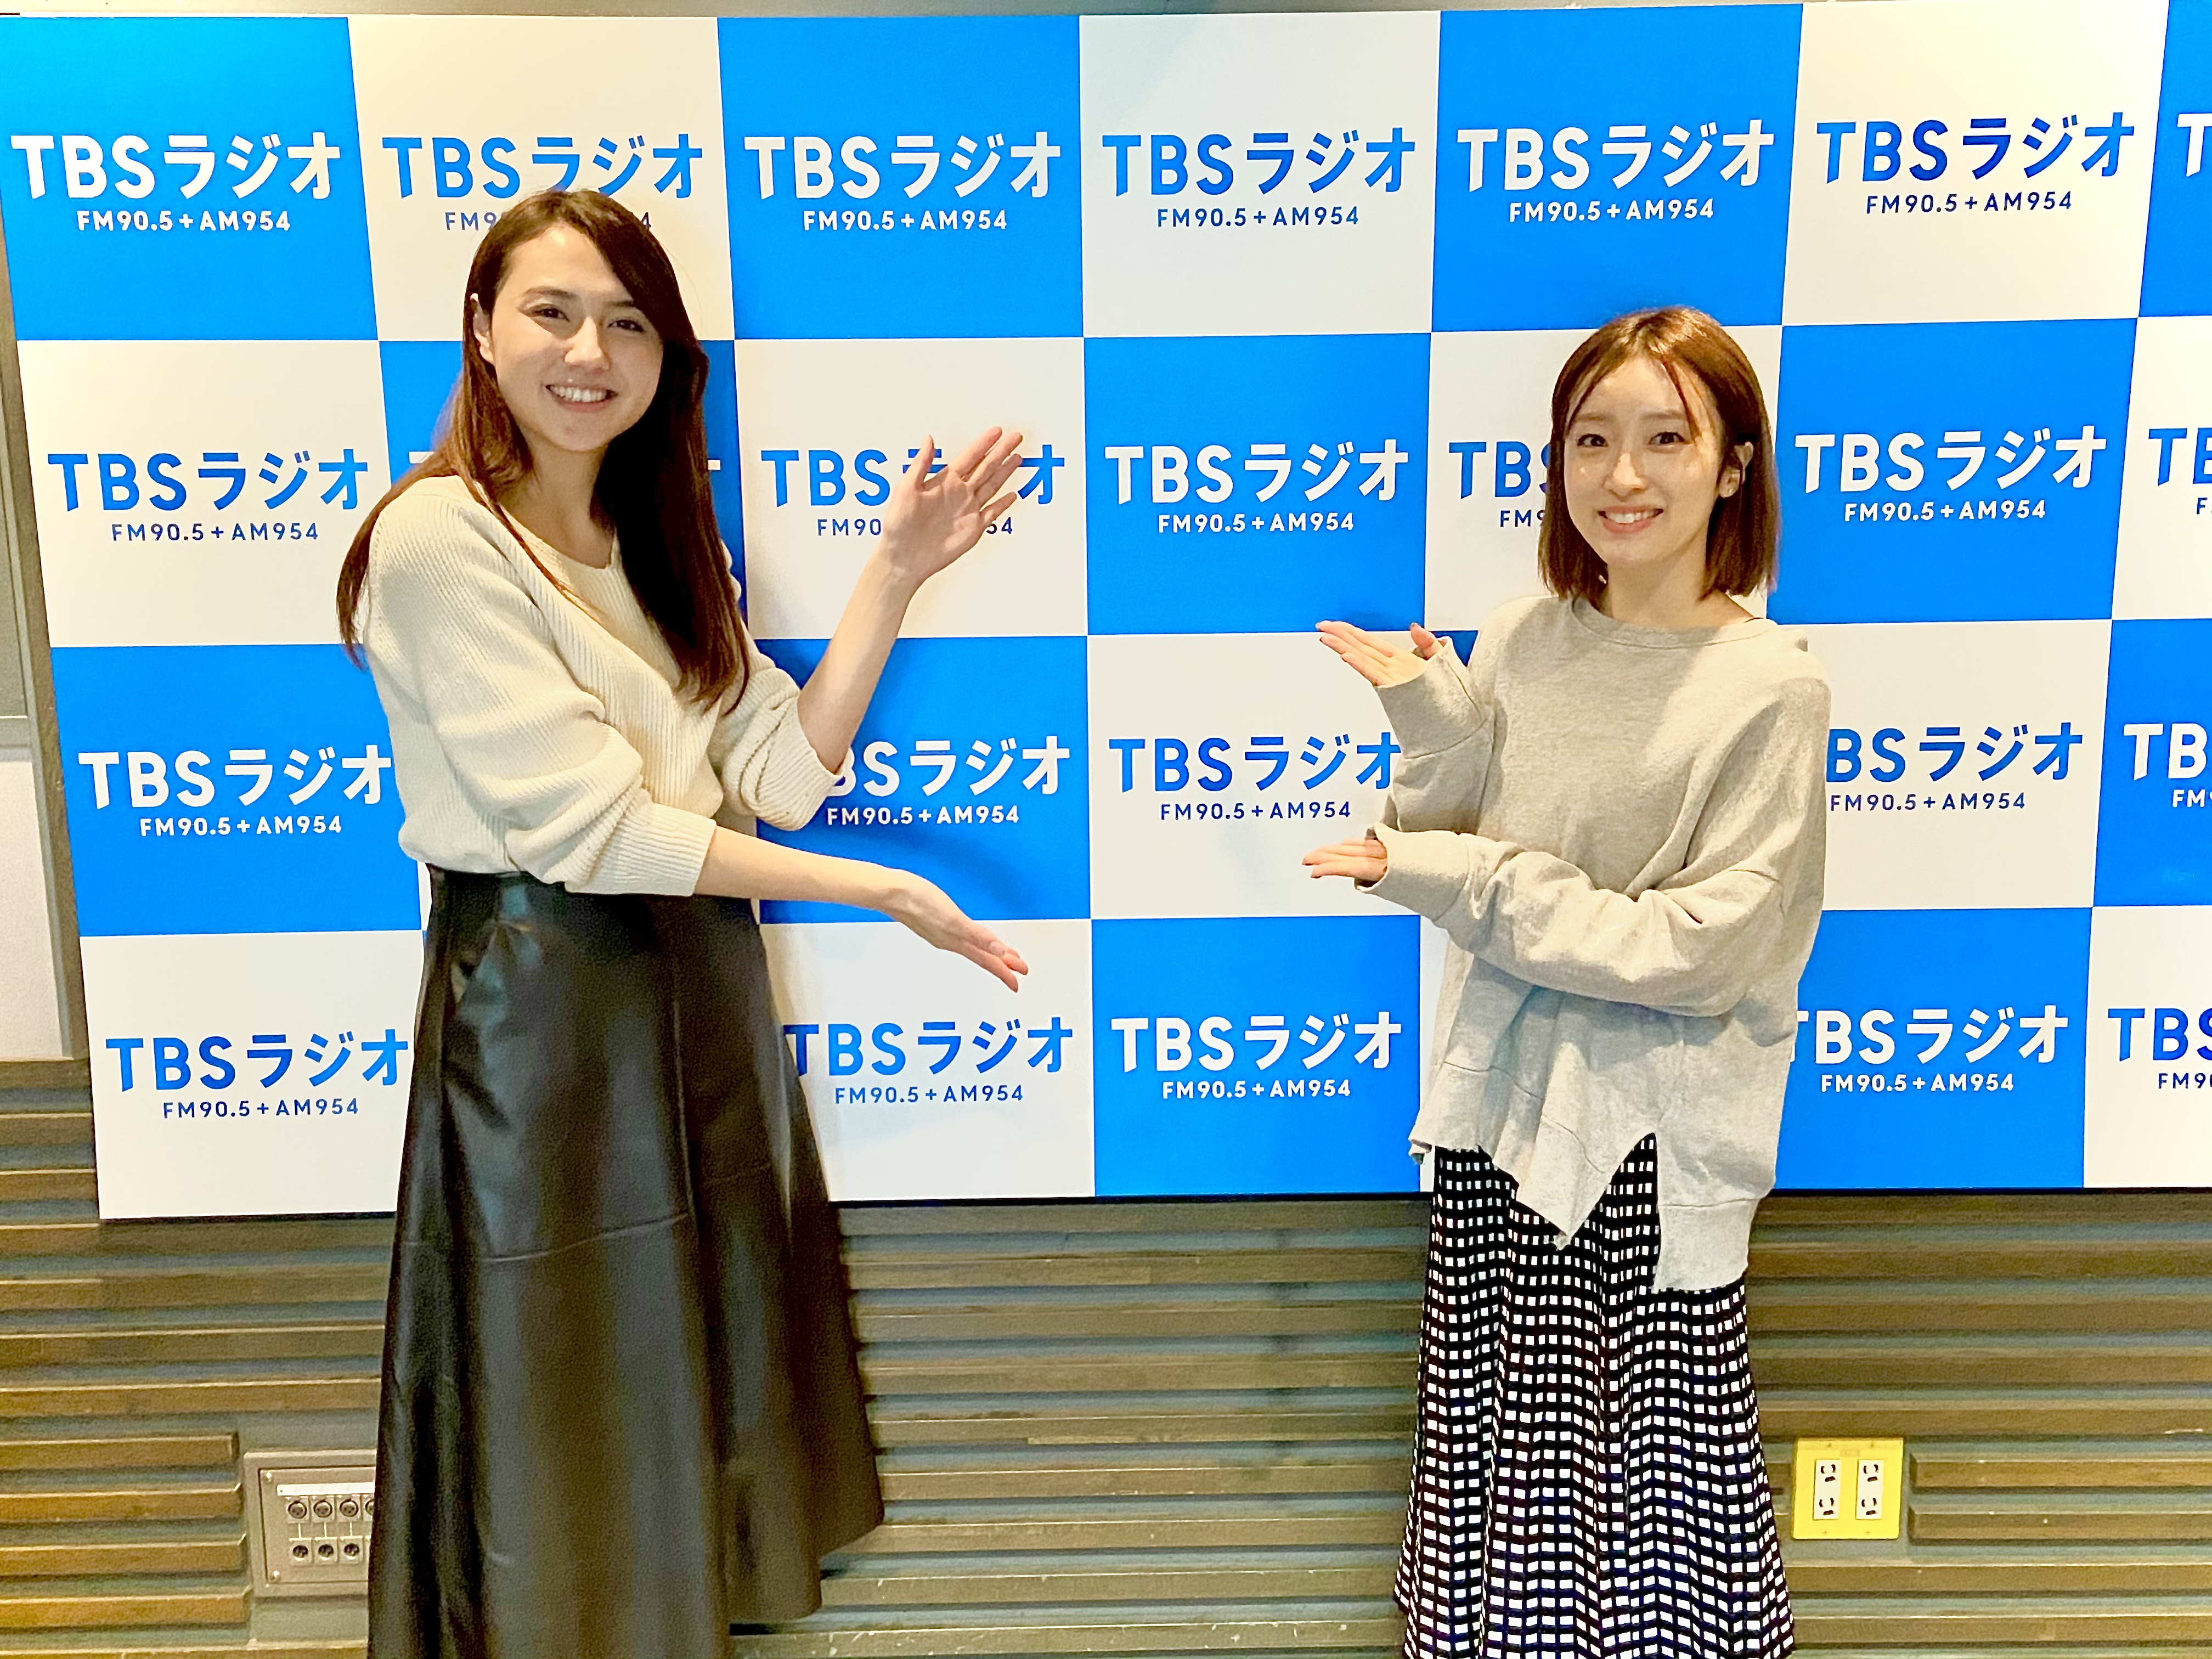 女優 梅田彩佳さん Akb48 劇場からドームへ 人気アイドルになるまでの道のり キャプテンの役割とは ミュージカル Edges エッジズ の魅力